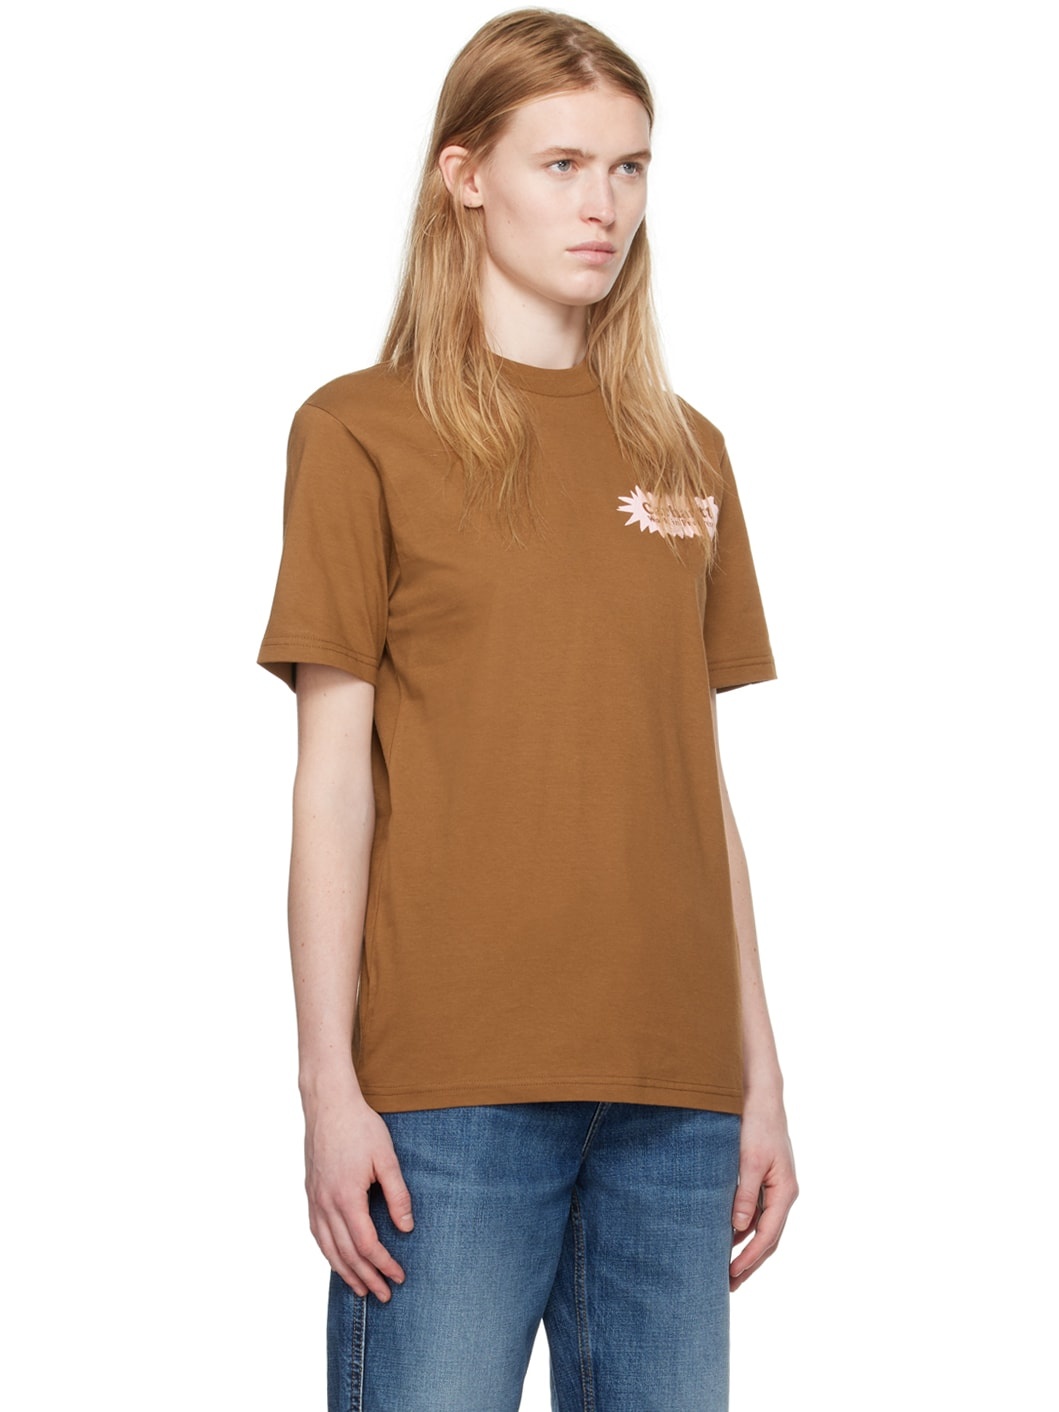 Brown Bam T-Shirt - 2